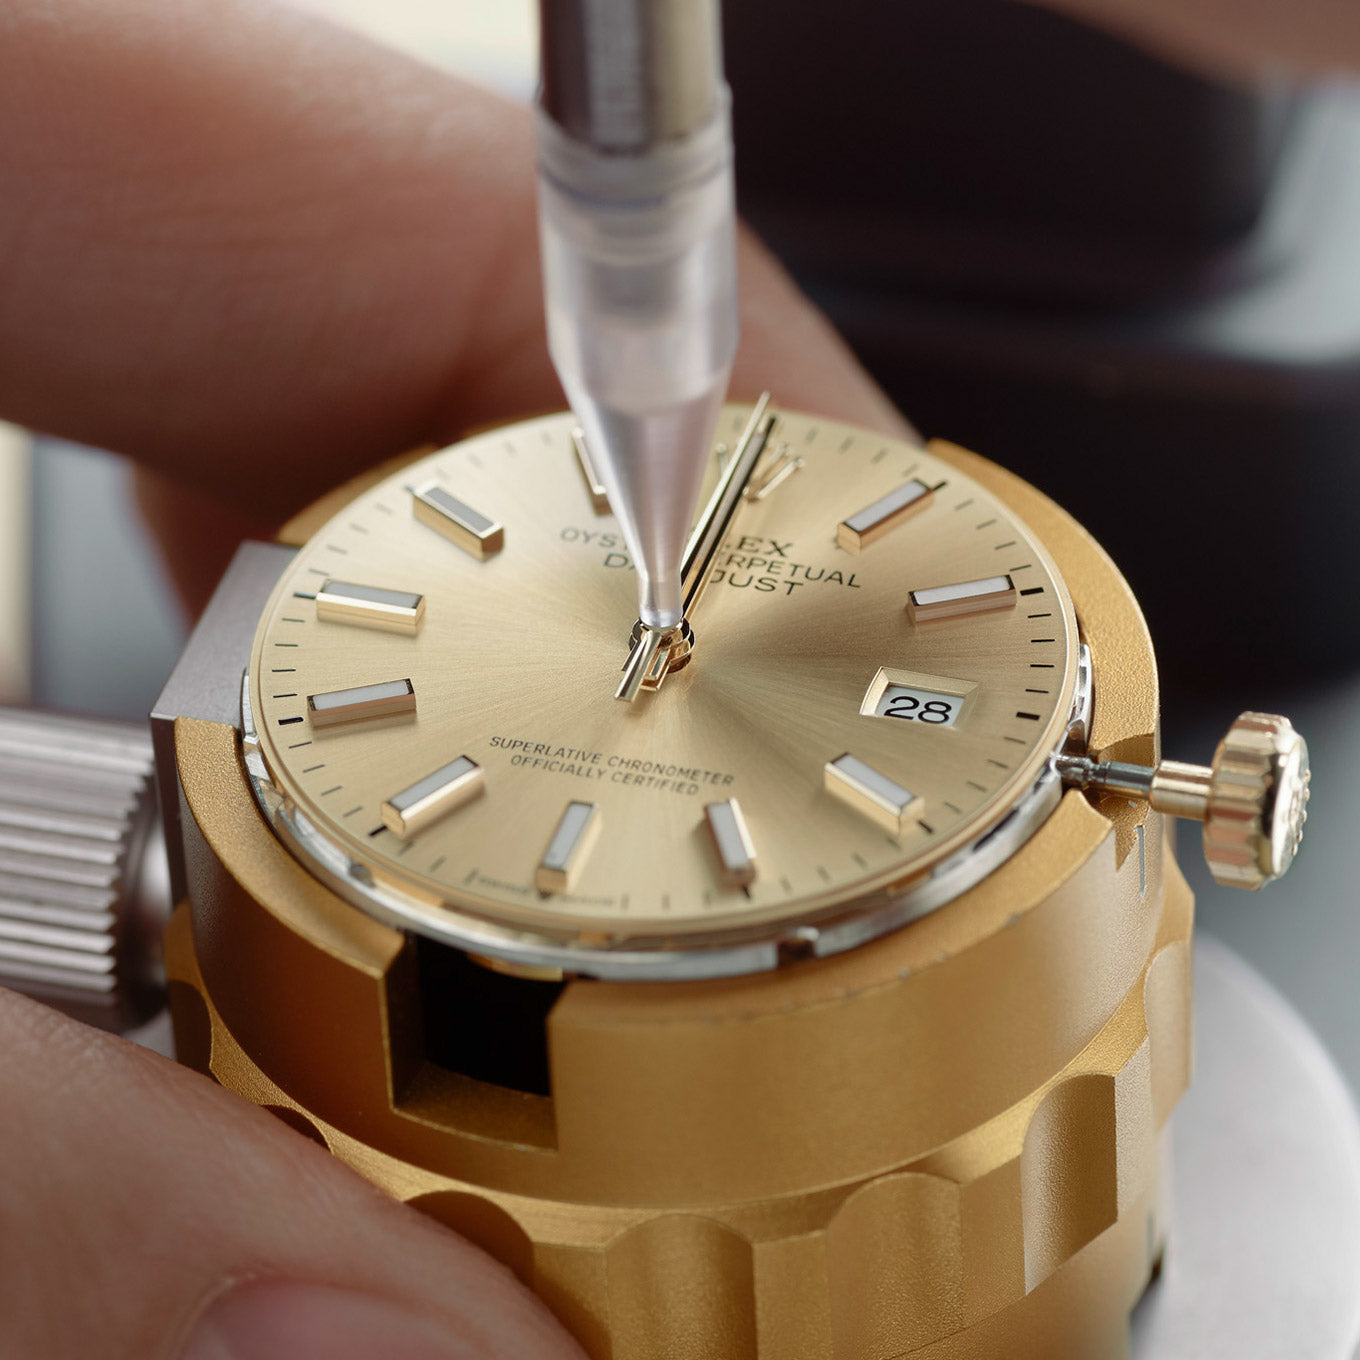 Adjusting Rolex watch hands